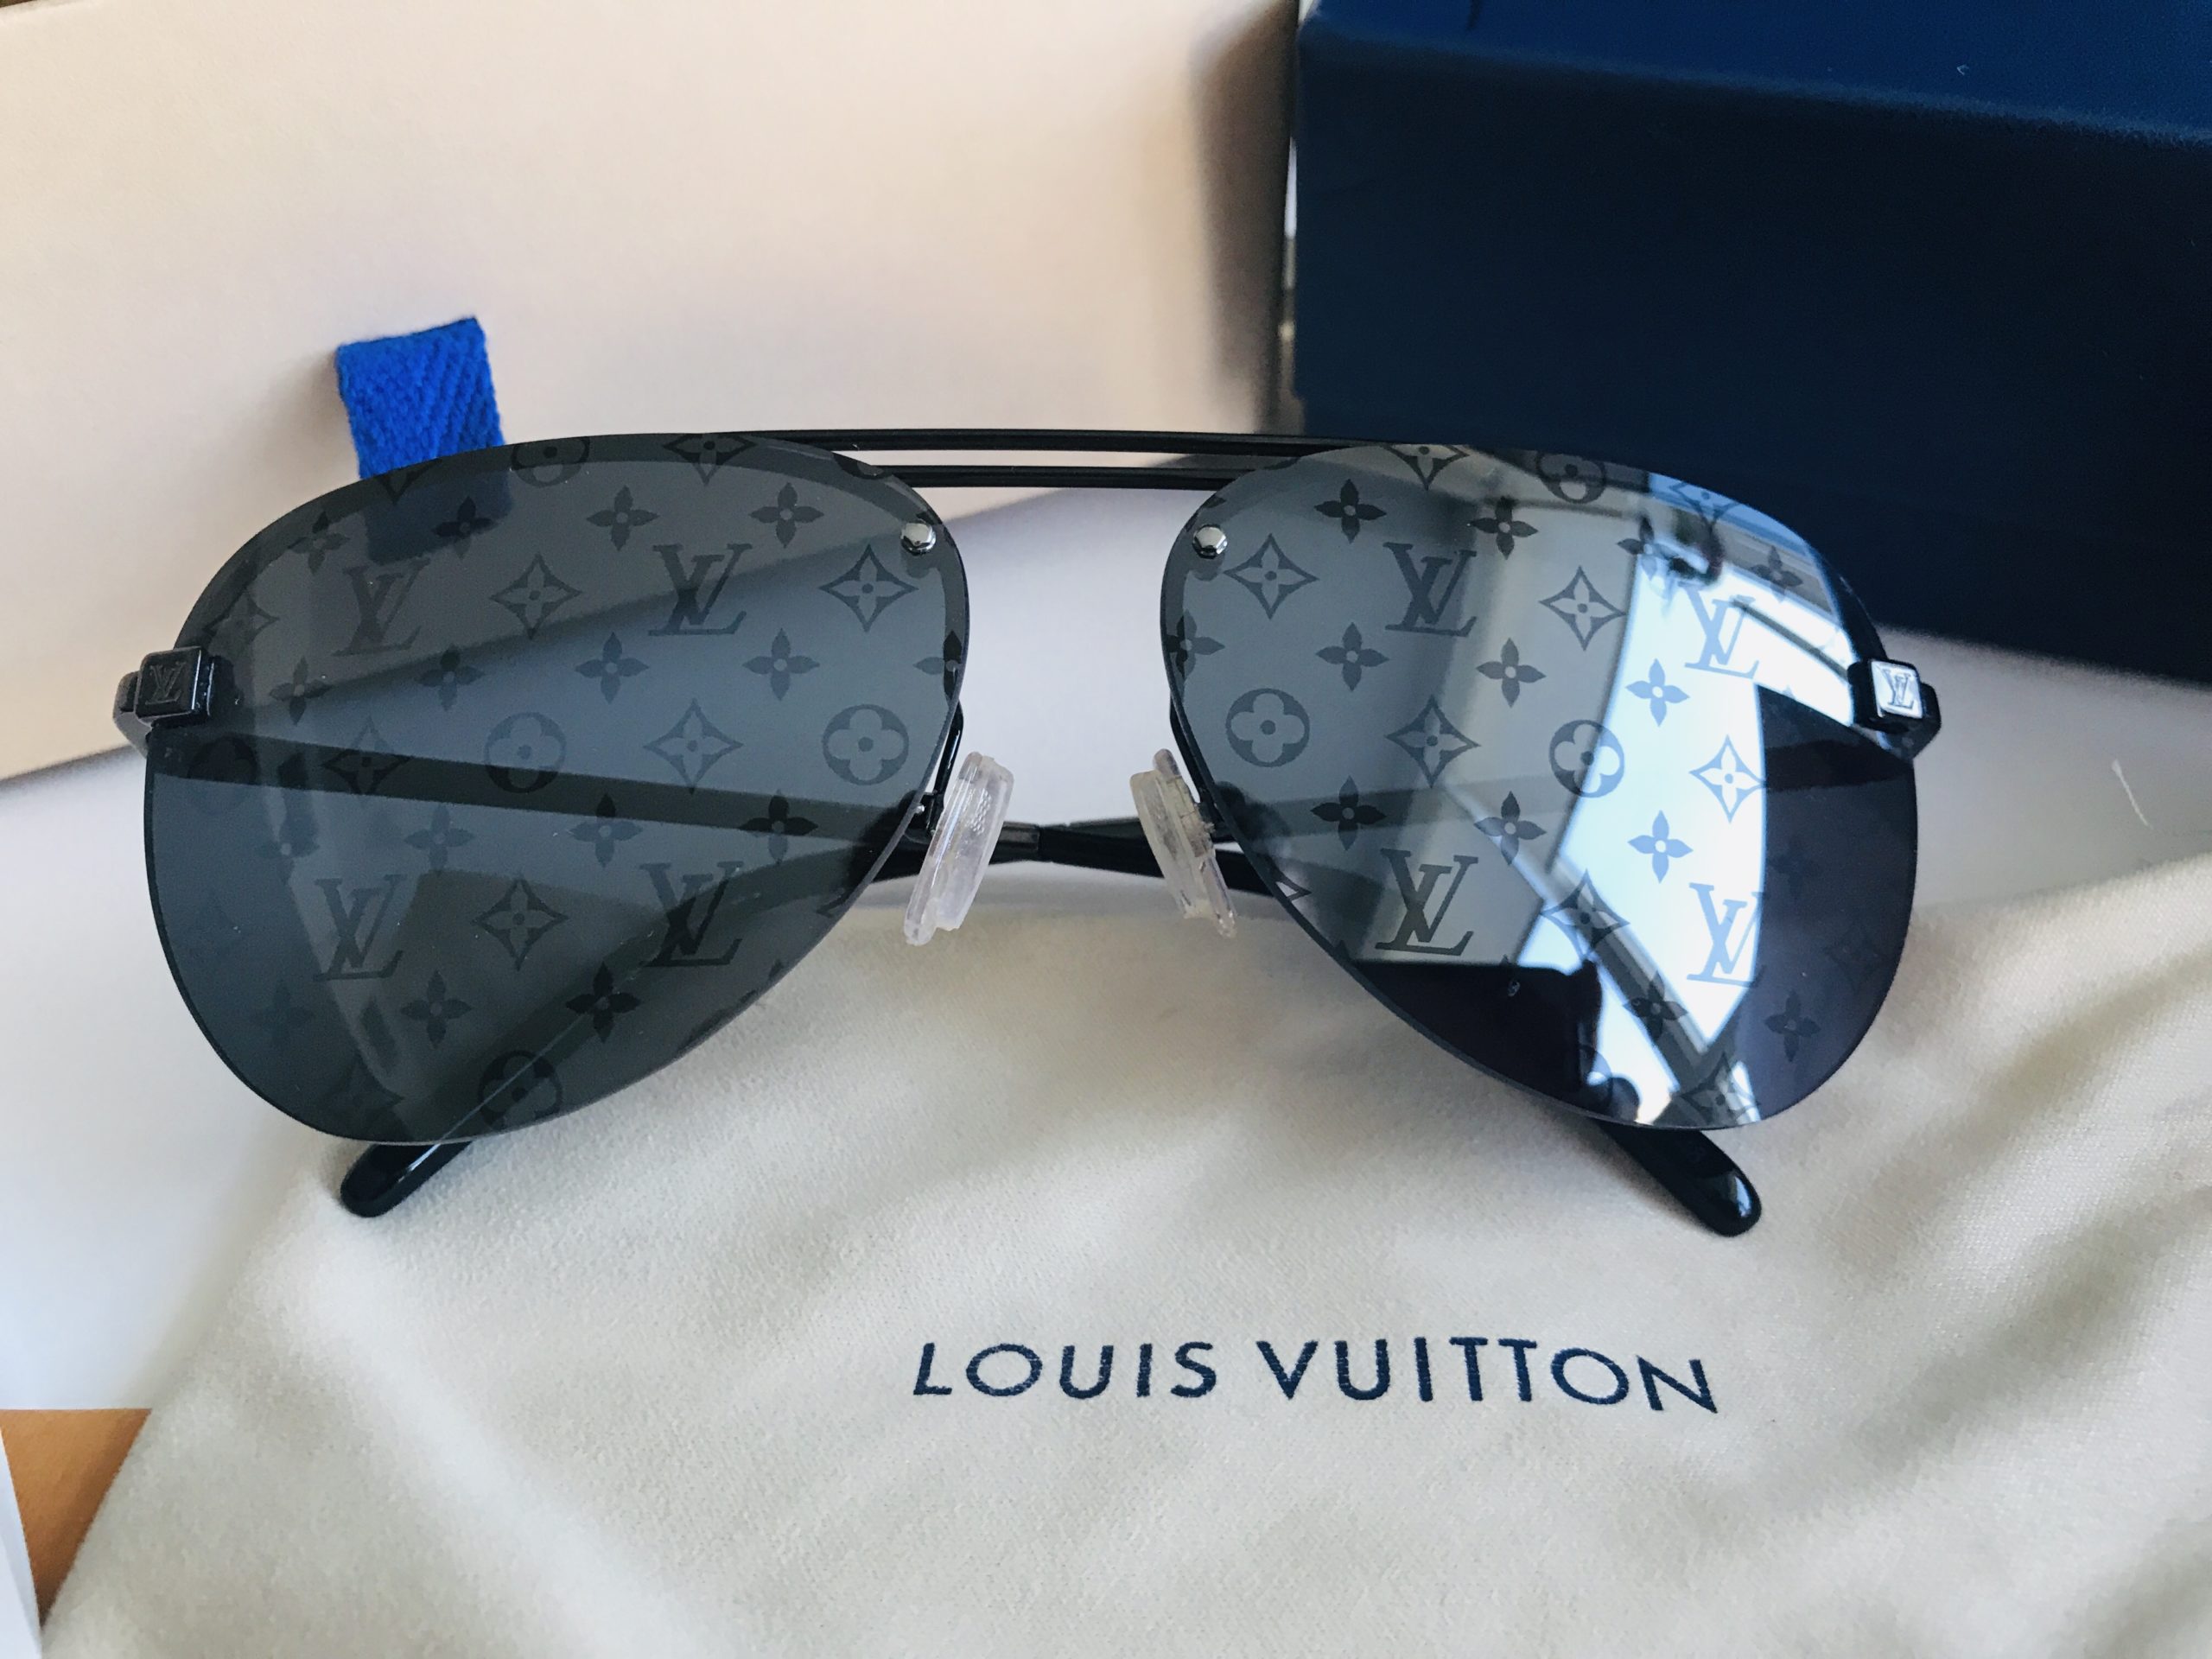 Quần bò Louis Vuitton rách xước họa tiết chữ QBLV285 siêu cấp like